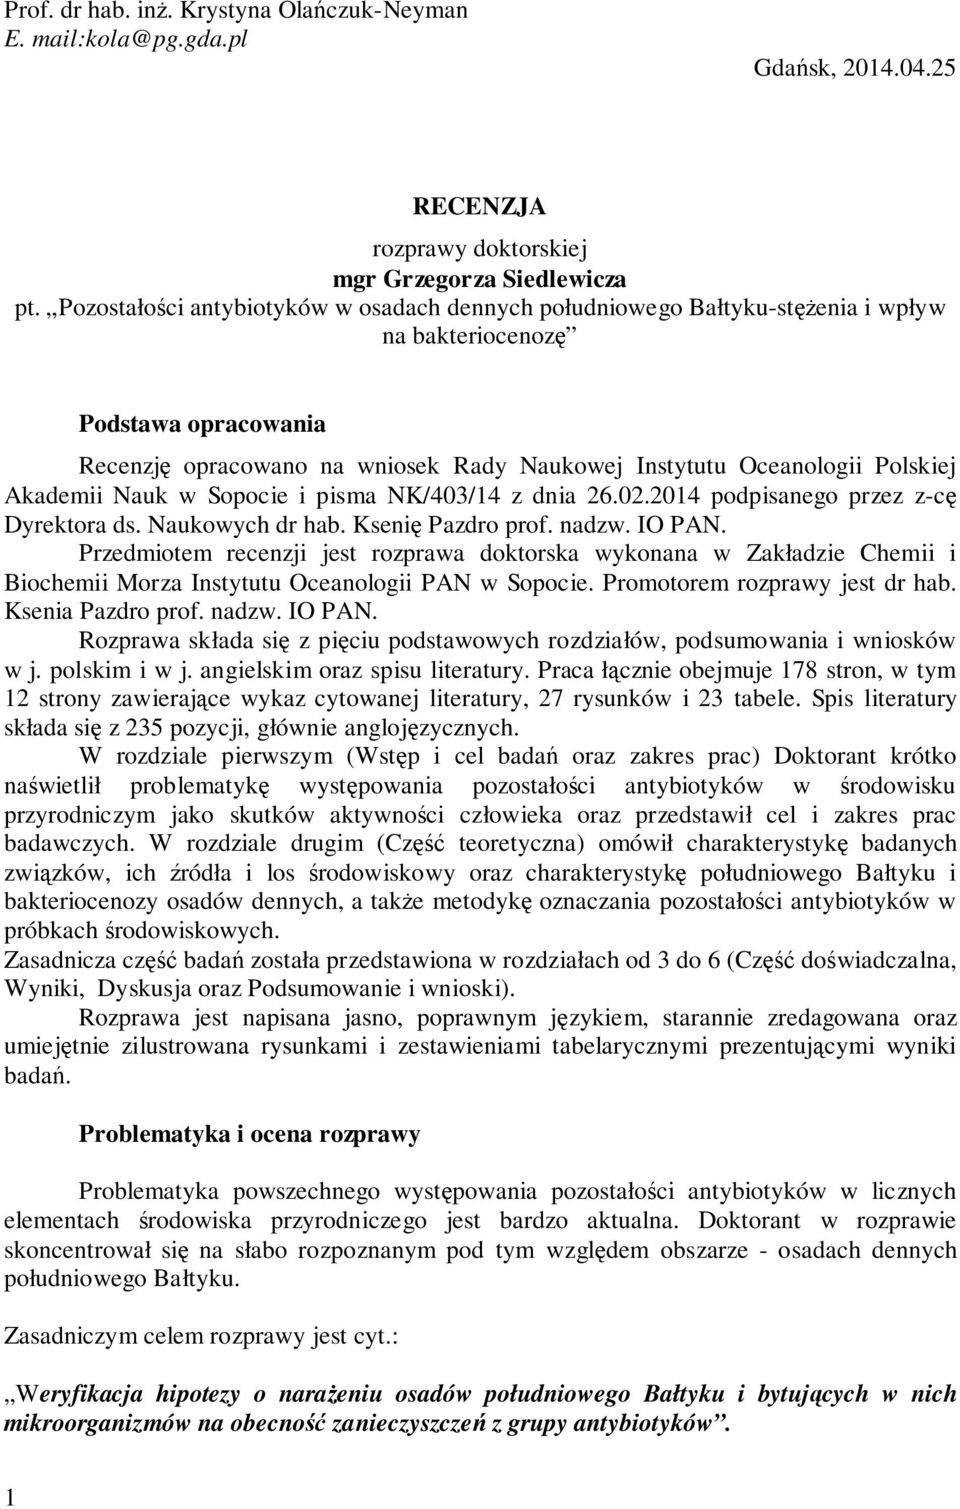 Akademii Nauk w Sopocie i pisma NK/403/14 z dnia 26.02.2014 podpisanego przez z-cę Dyrektora ds. Naukowych dr hab. Ksenię Pazdro prof. nadzw. IO PAN.